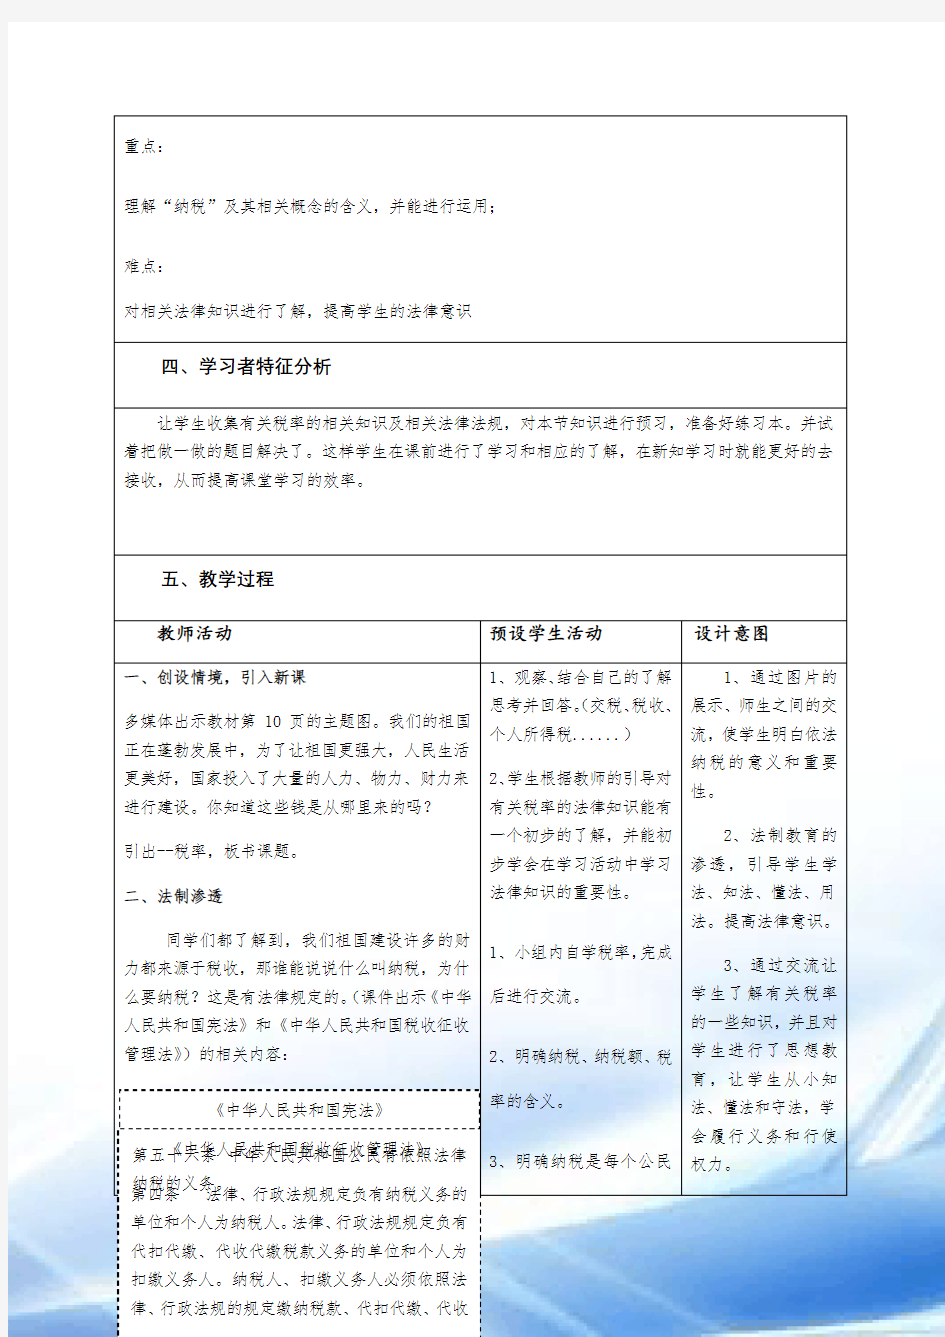 (刘云)2018国培计划作业1-教学设计模板